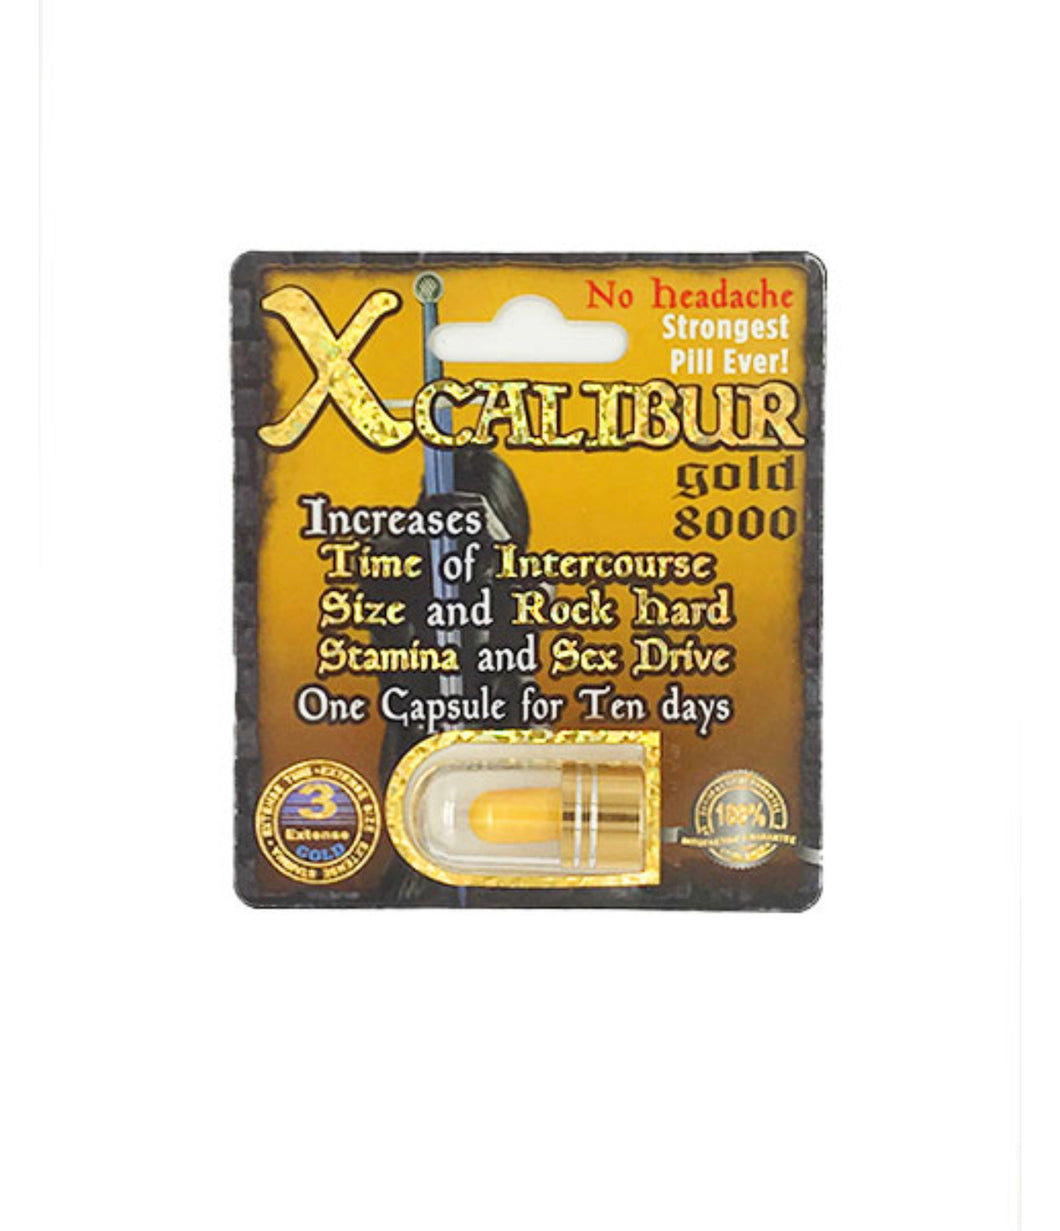 Xcaliber Gold 8000 Male Enhancement Pill